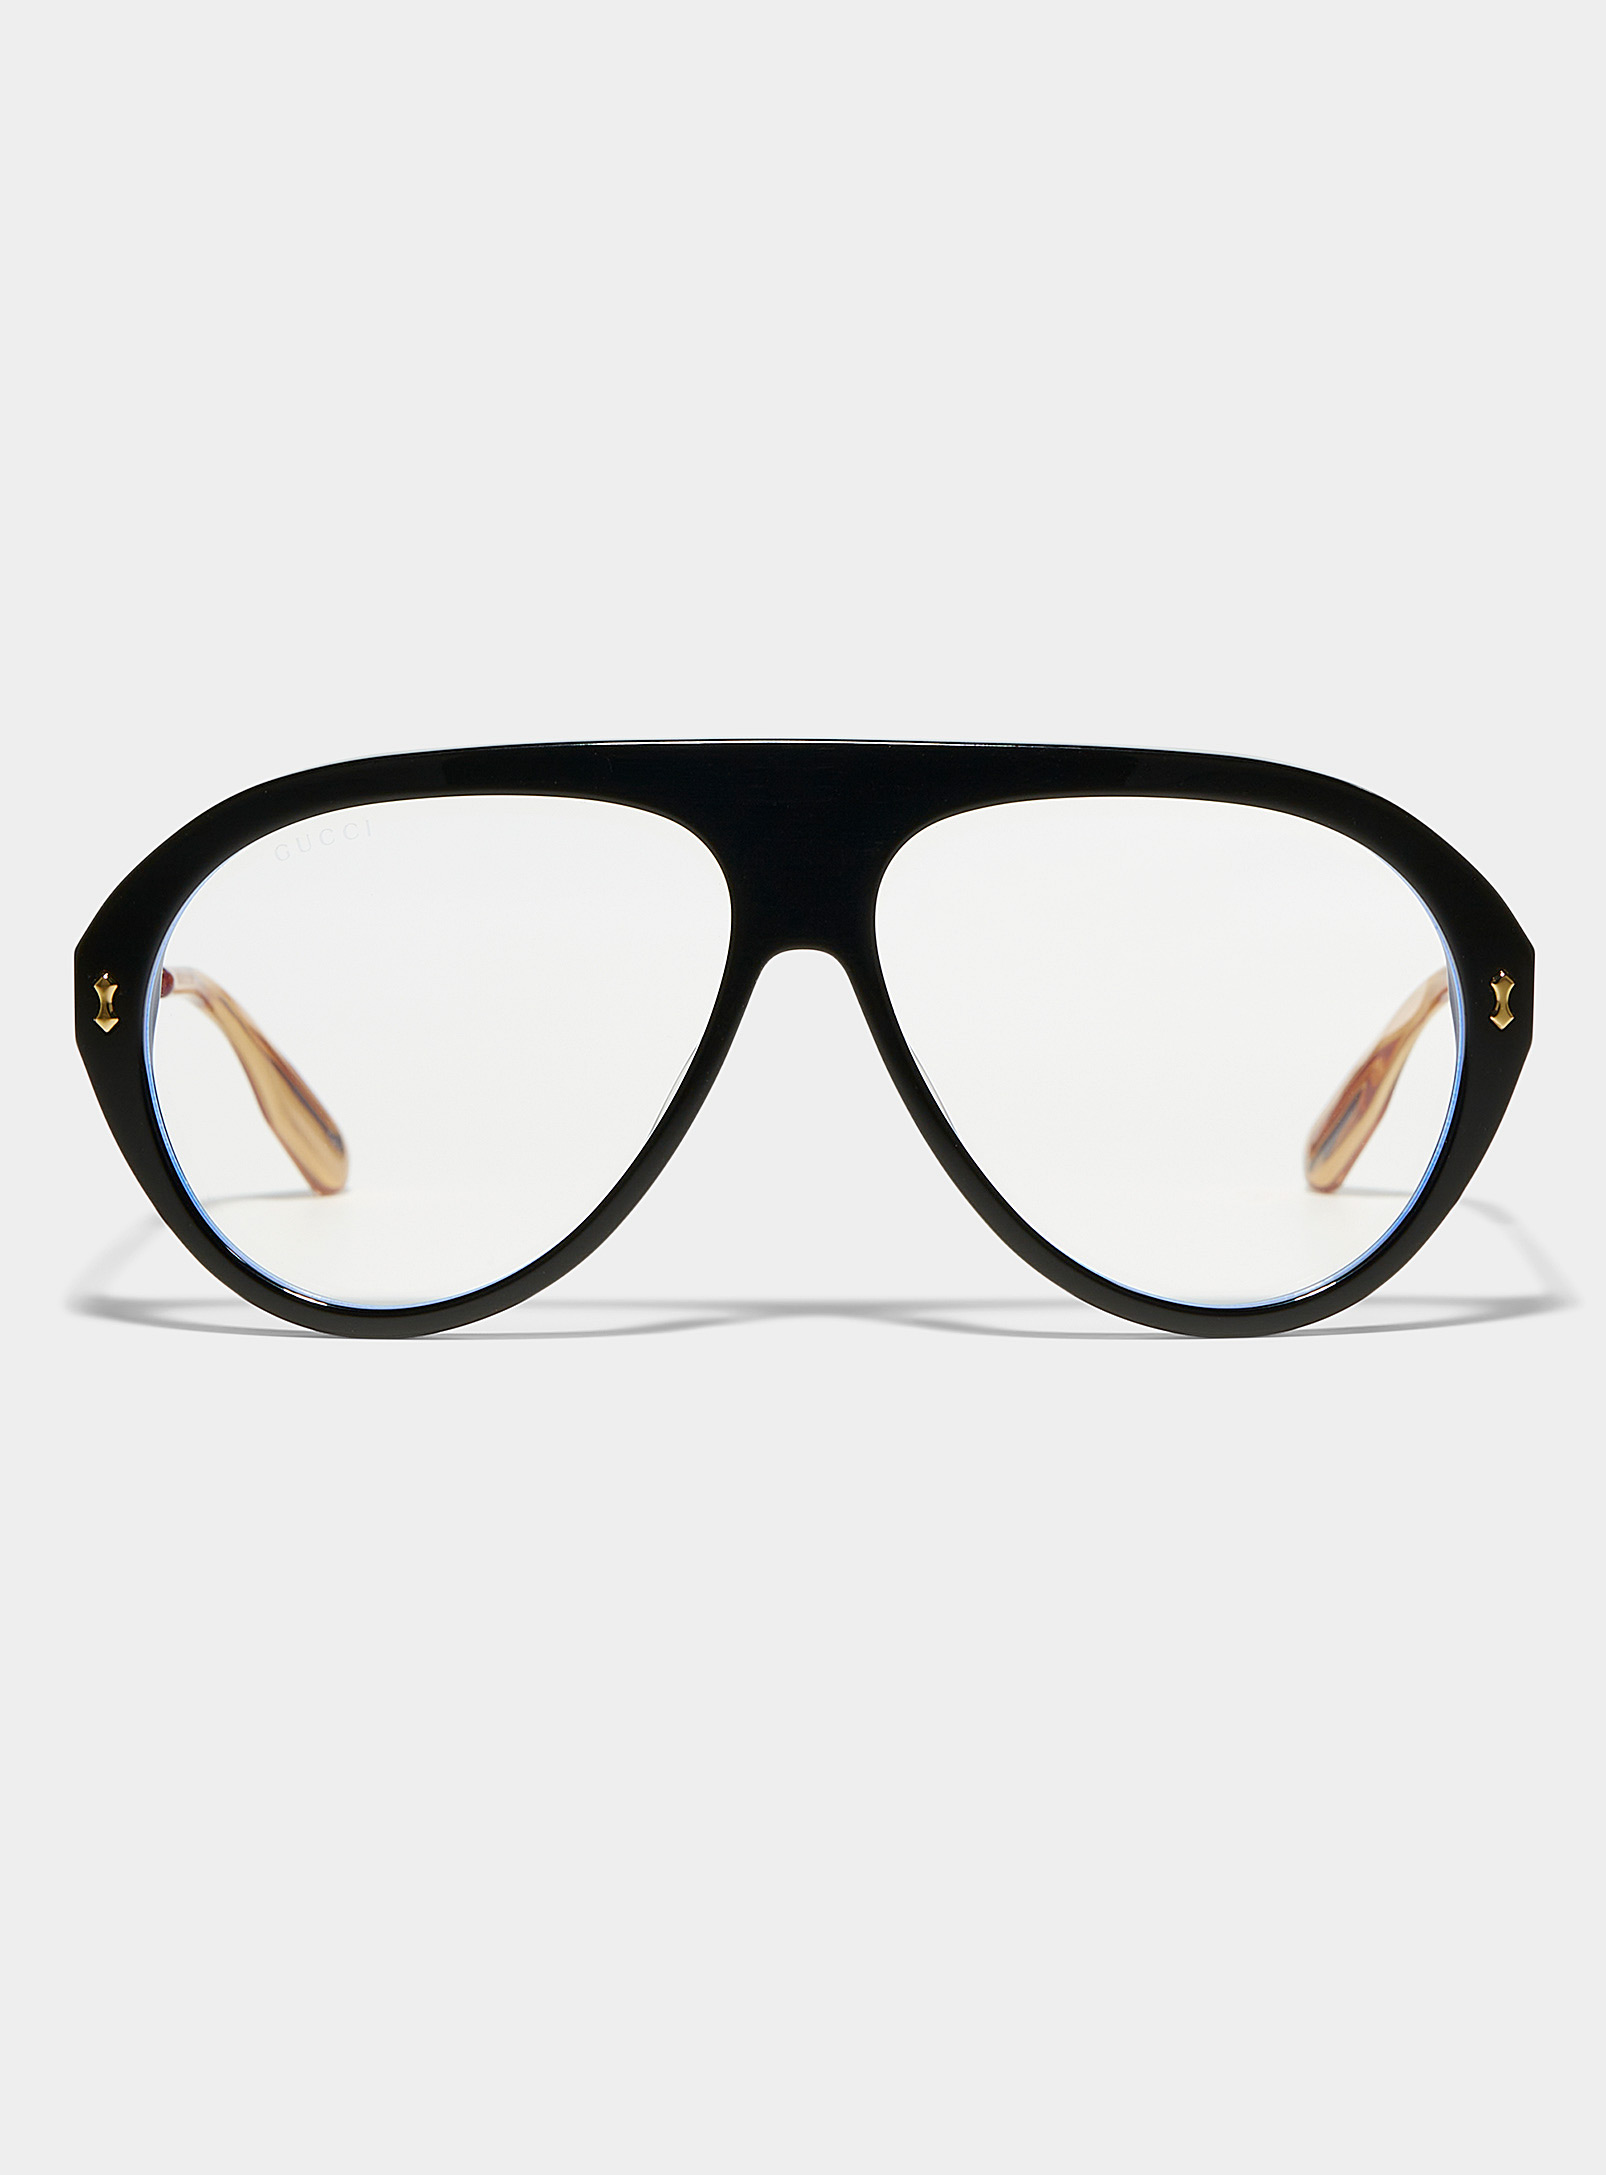 Gucci - Les lunettes aviateur branches dorées